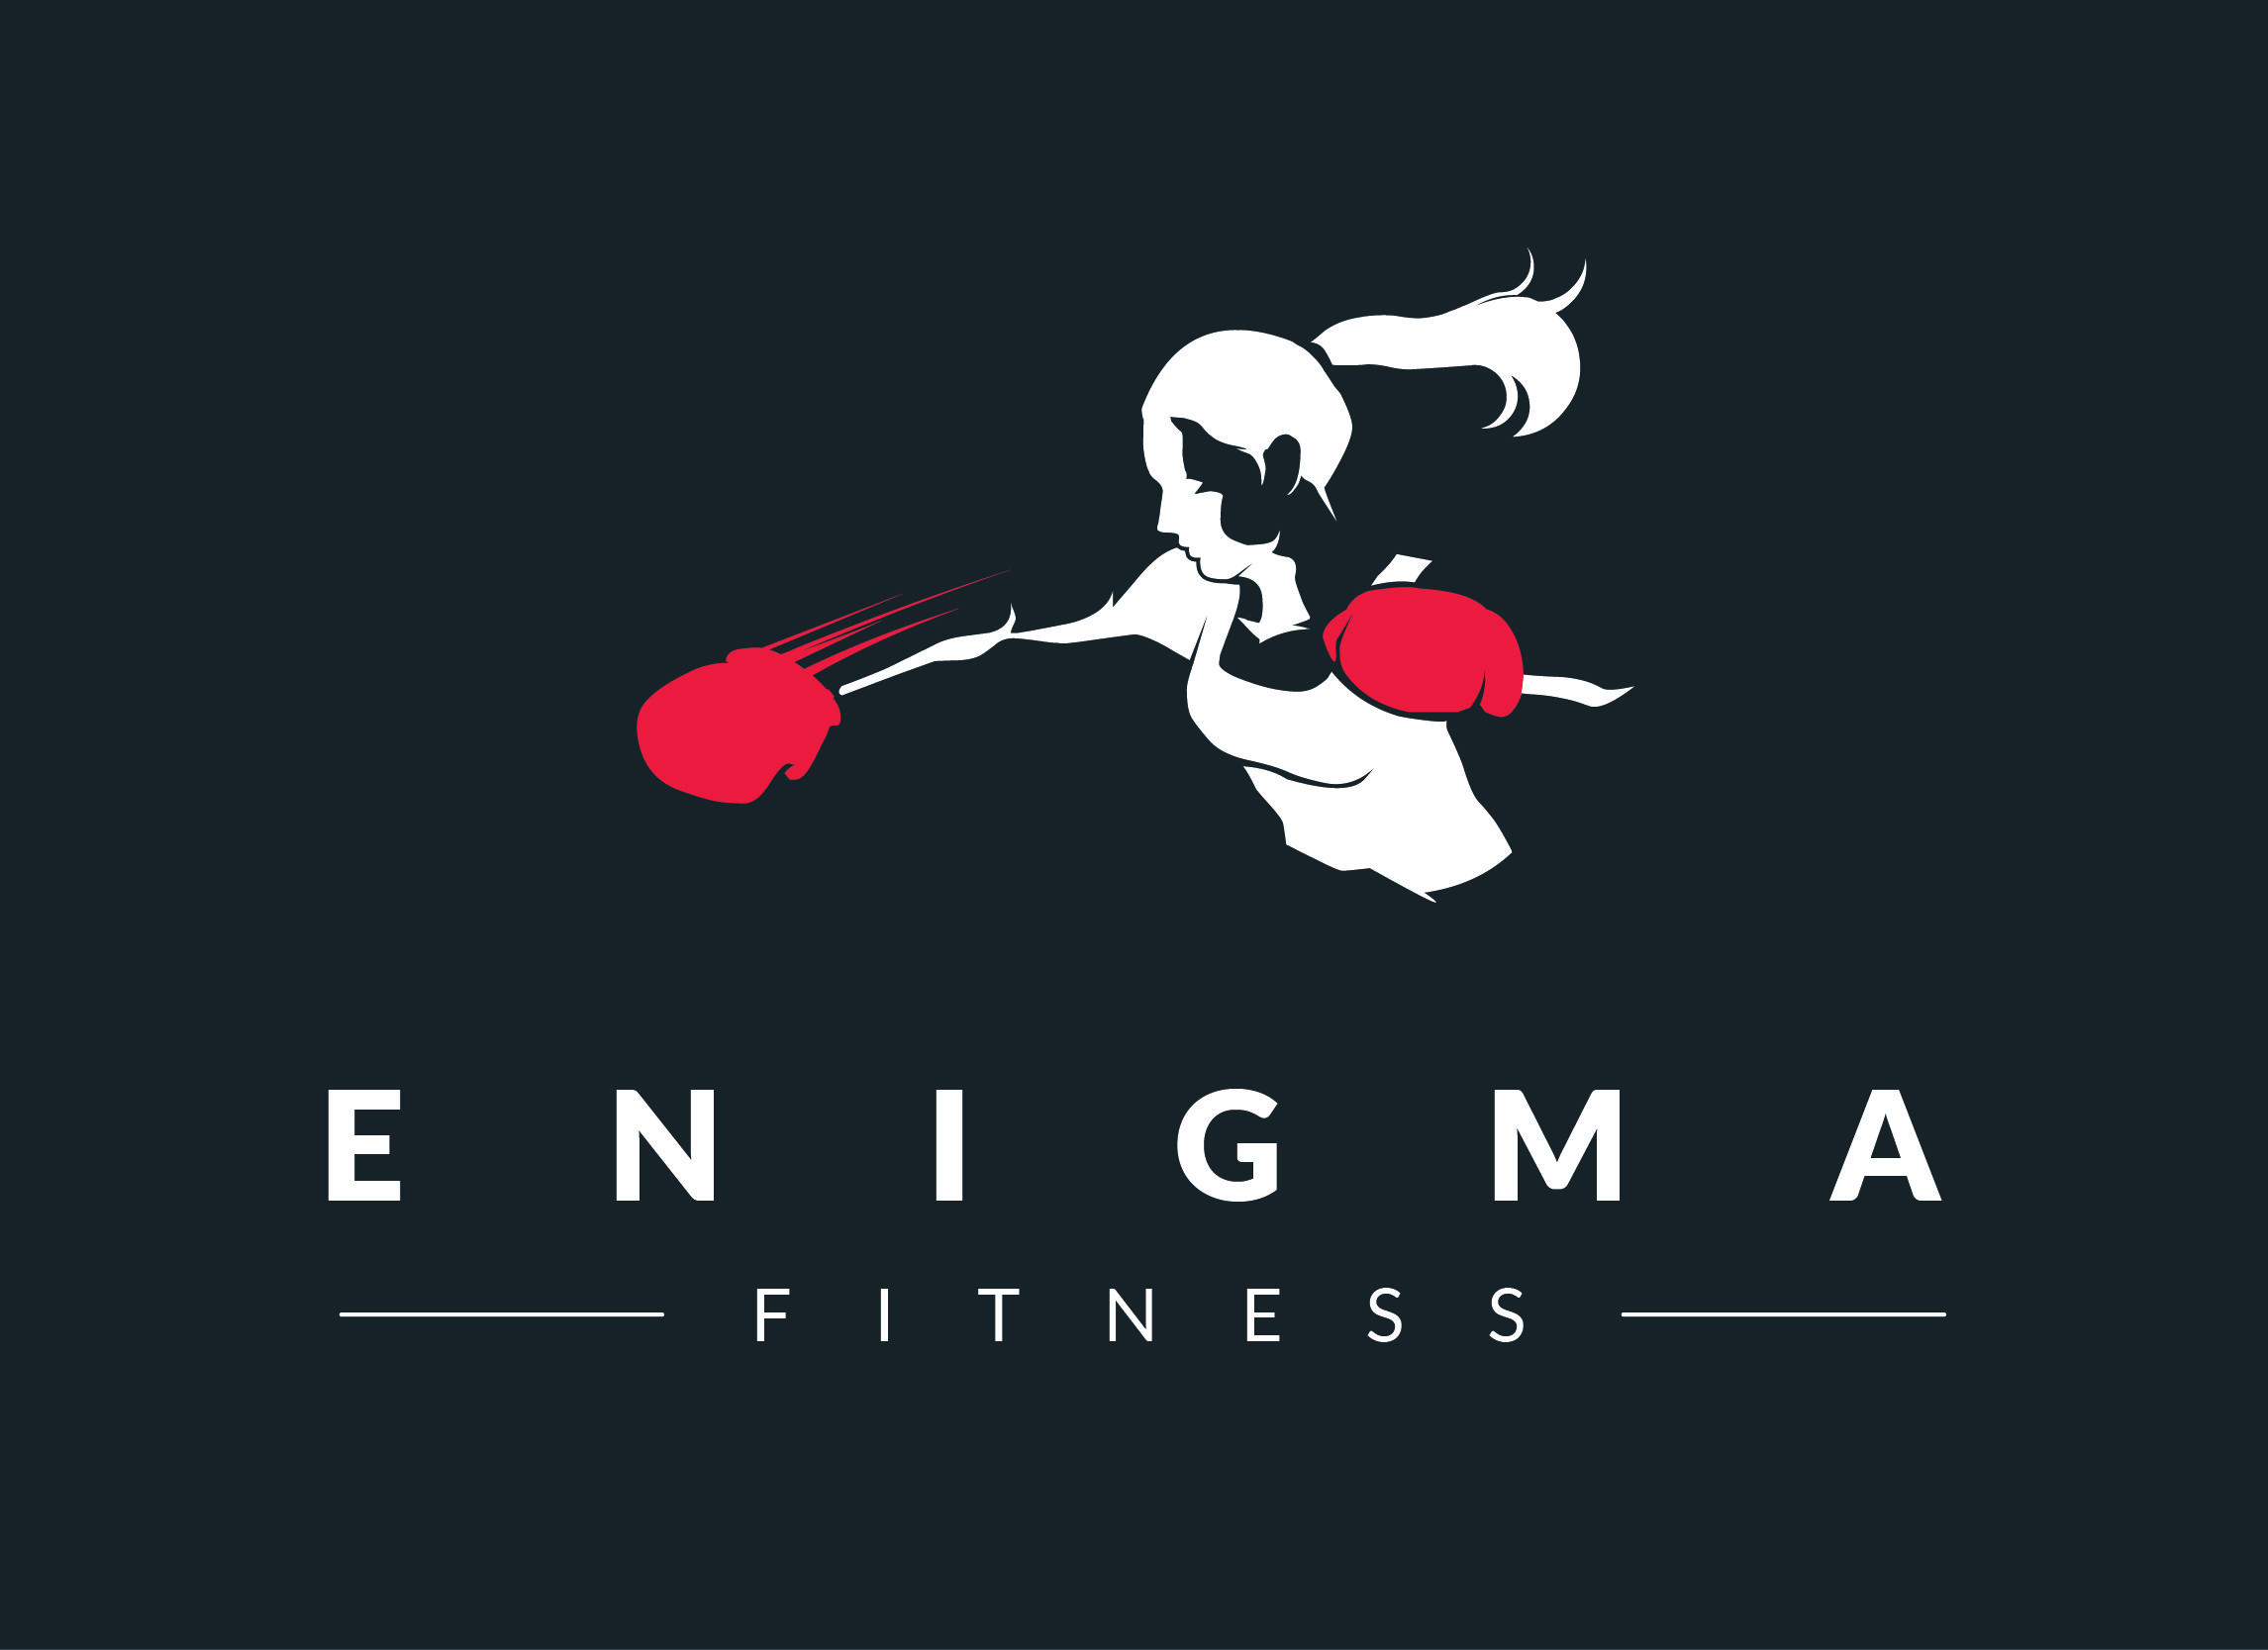 Enigma fitness